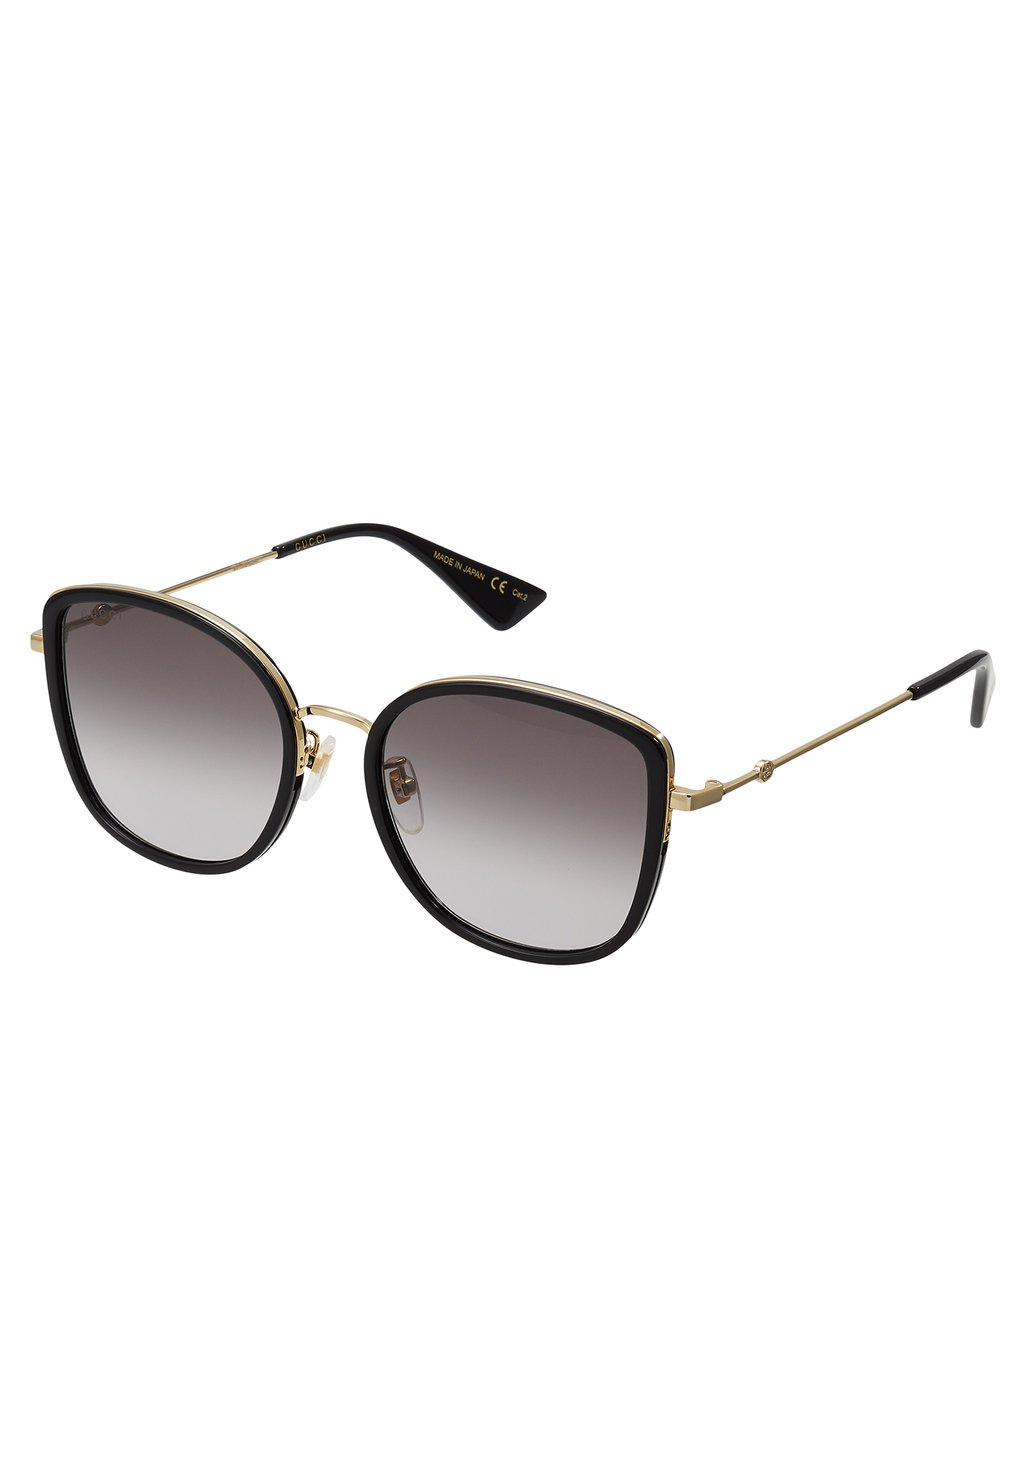 Солнцезащитные очки Gucci, чёрные/золотые